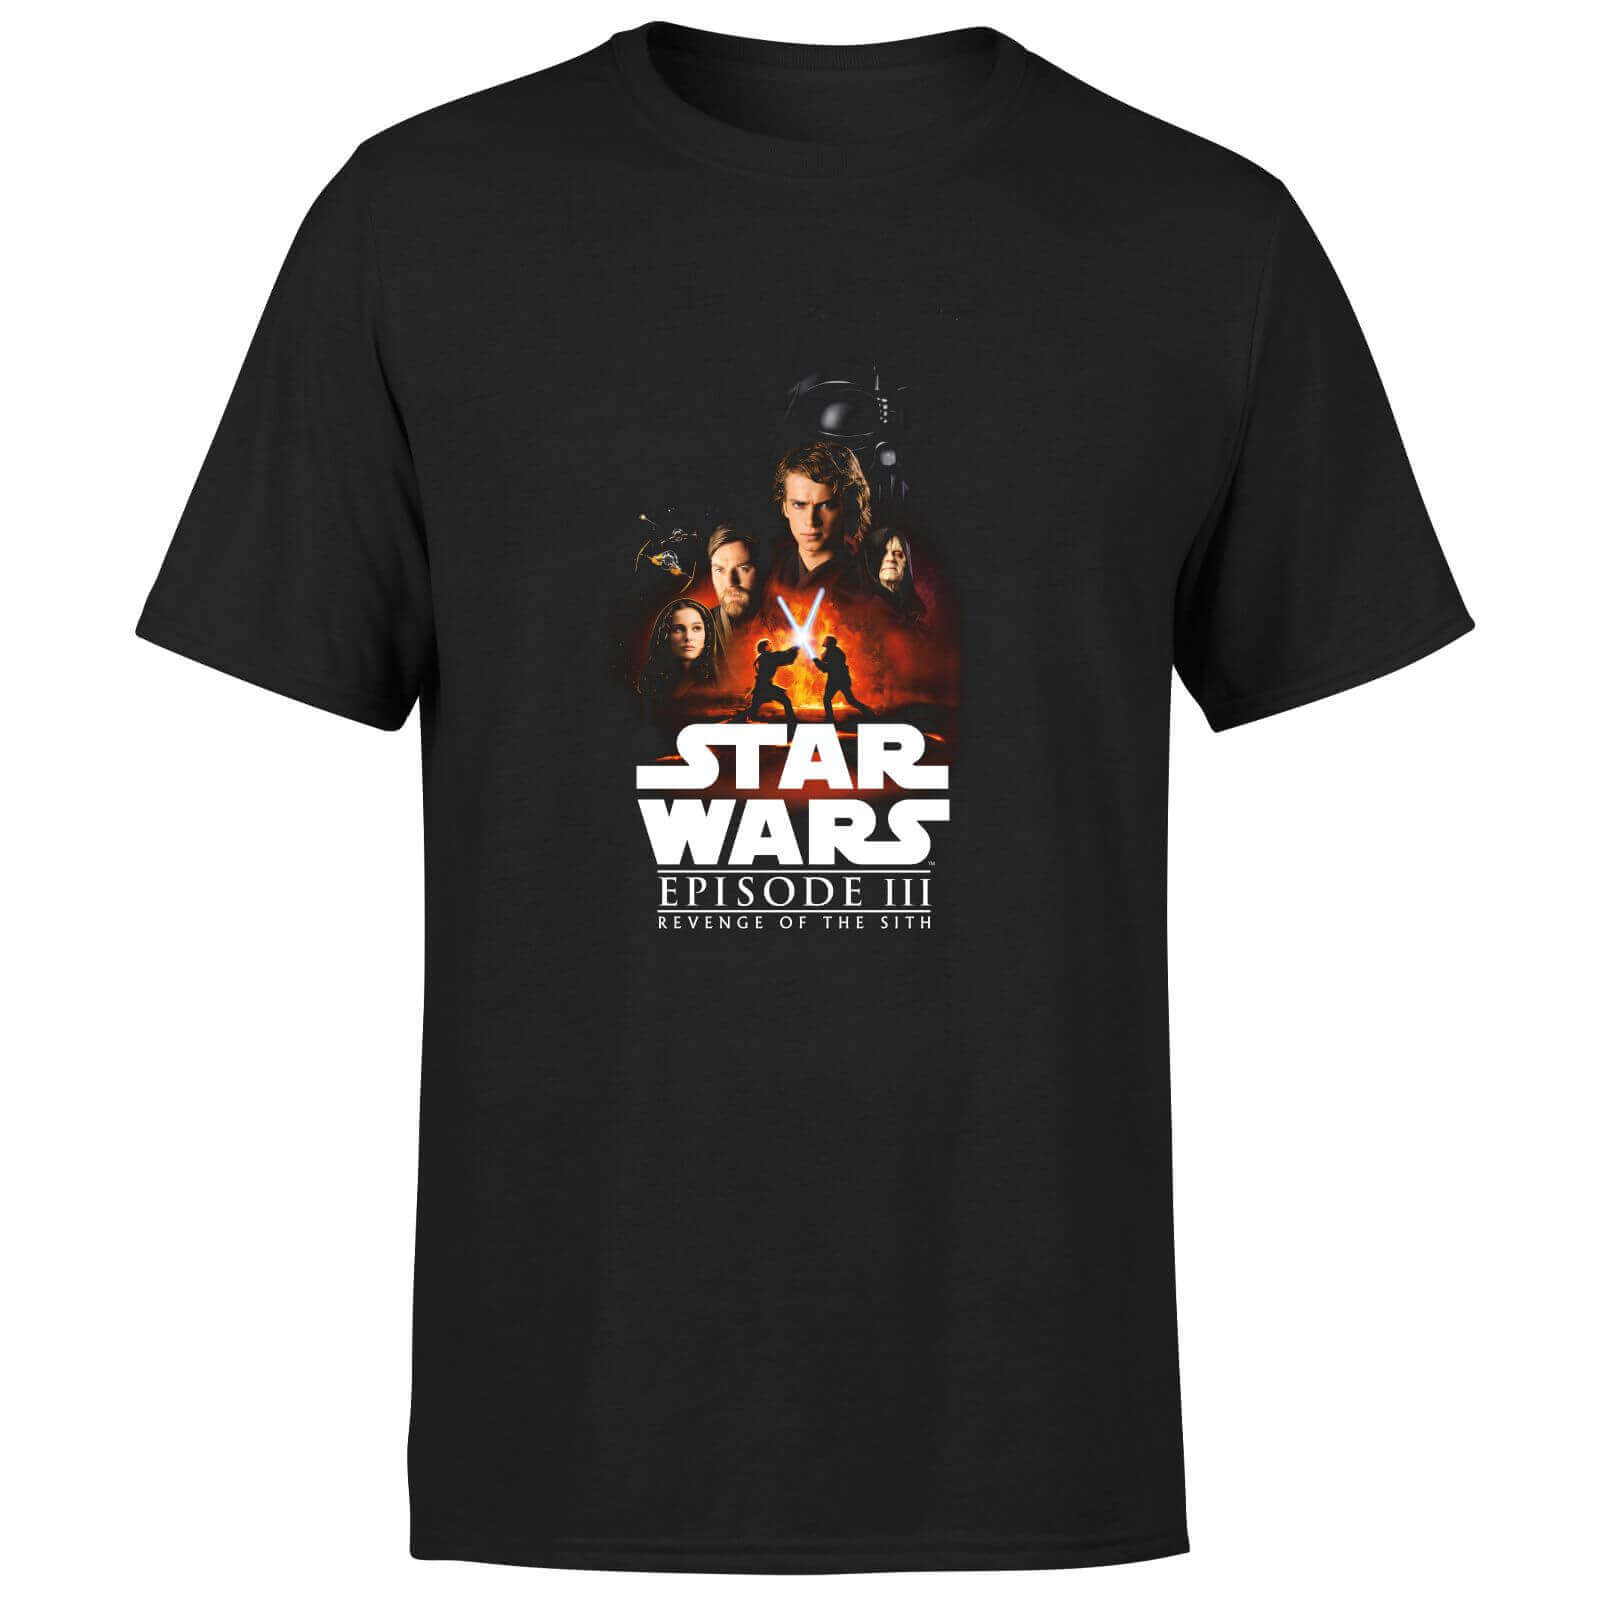 Star Wars Revenge Of The Sith Unisex T-Shirt - Black - XS - Noir